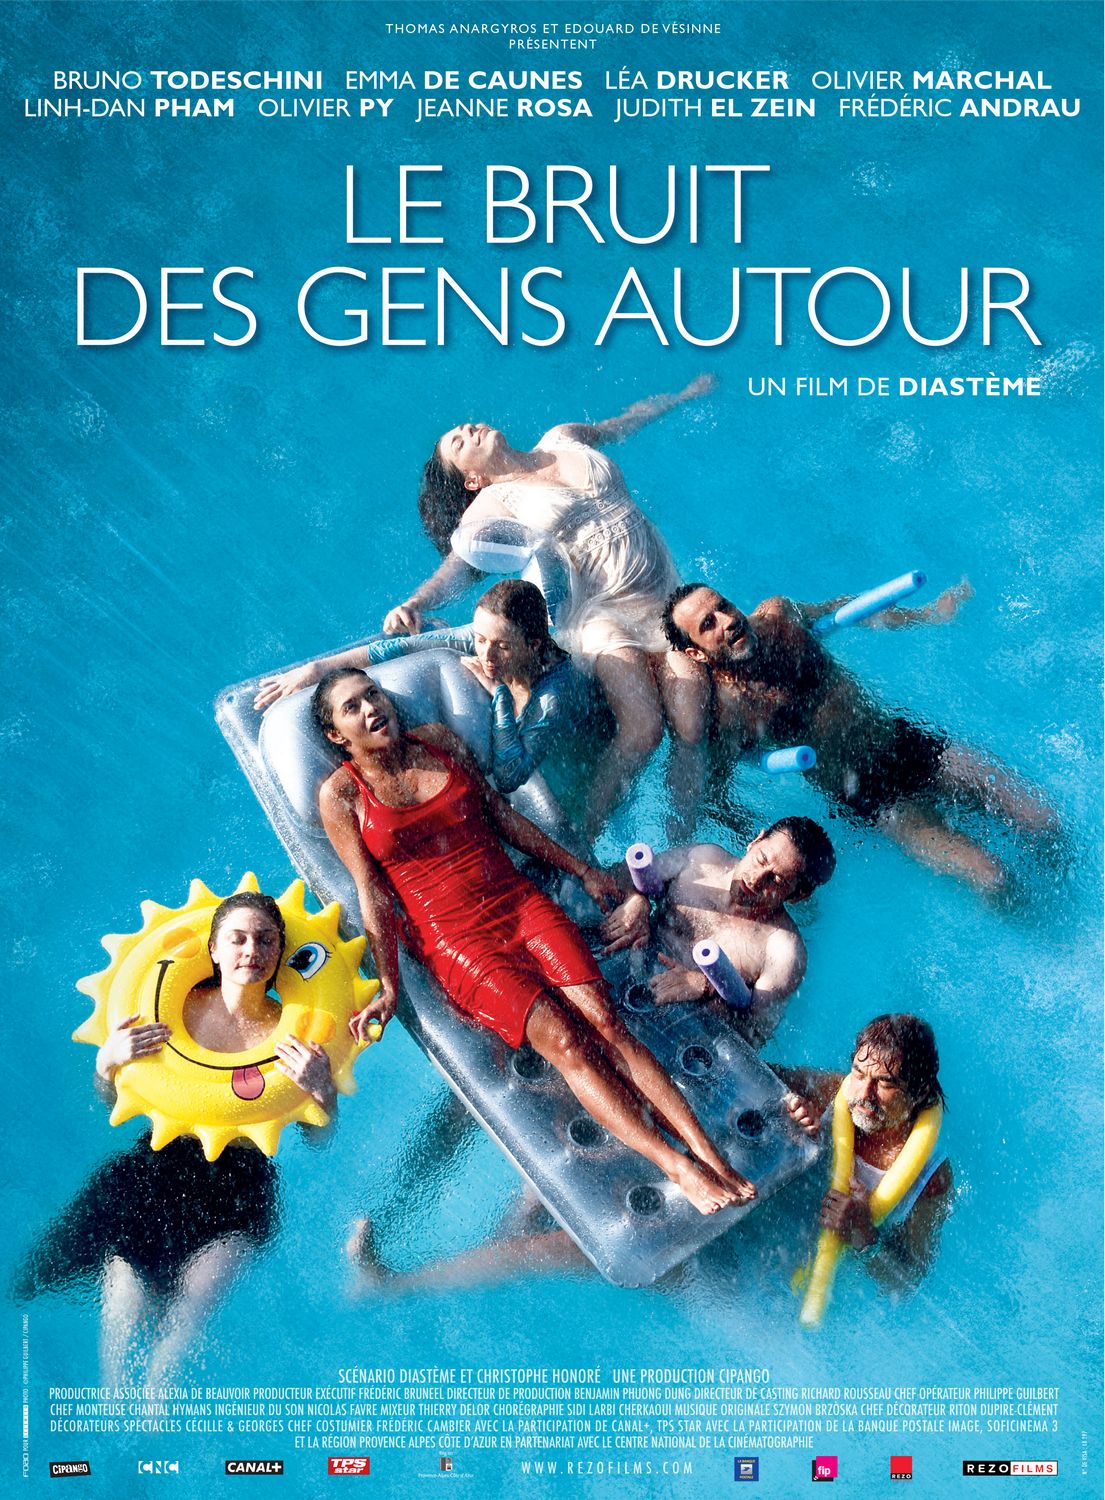 Extra Large Movie Poster Image for Bruit des gens autour, Le 